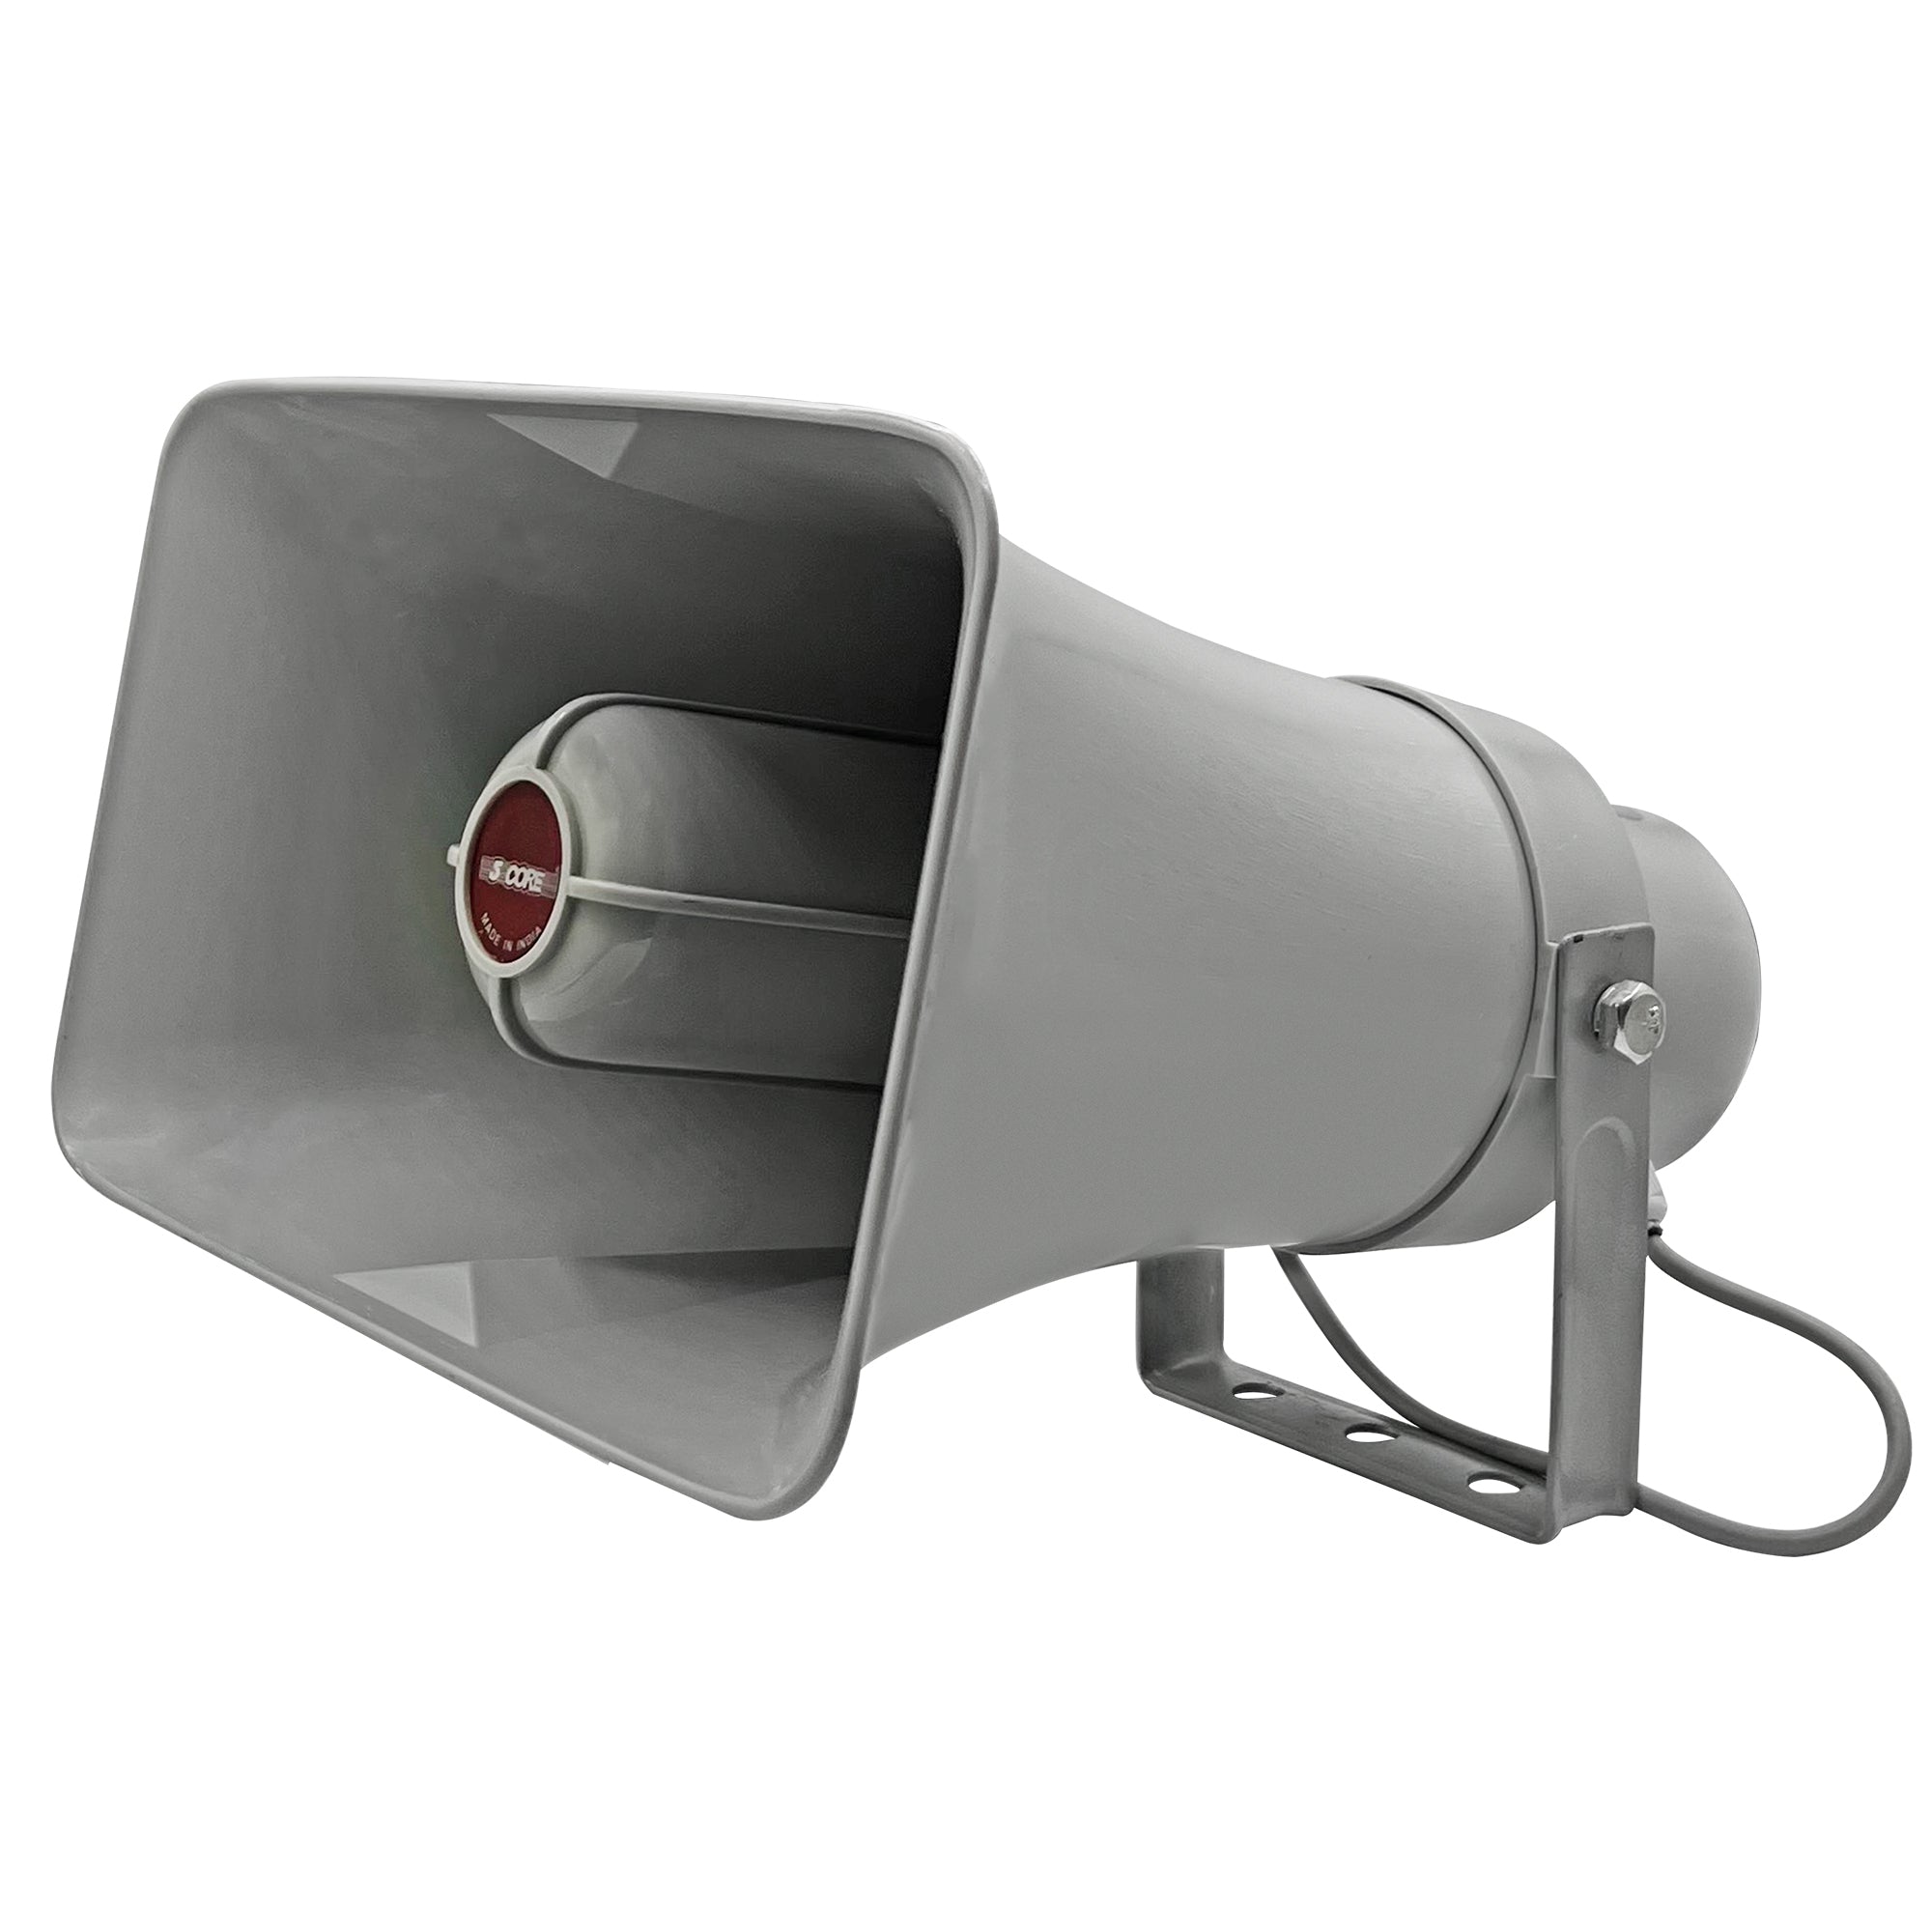 5 Core PA Speaker System Outdoor Loudspeaker System 20W Power Horns Waterproof Weatherproof 8 Ohm PA Speaker For Cb Ice Cream Truck Car -TRI SIREN 1Pc